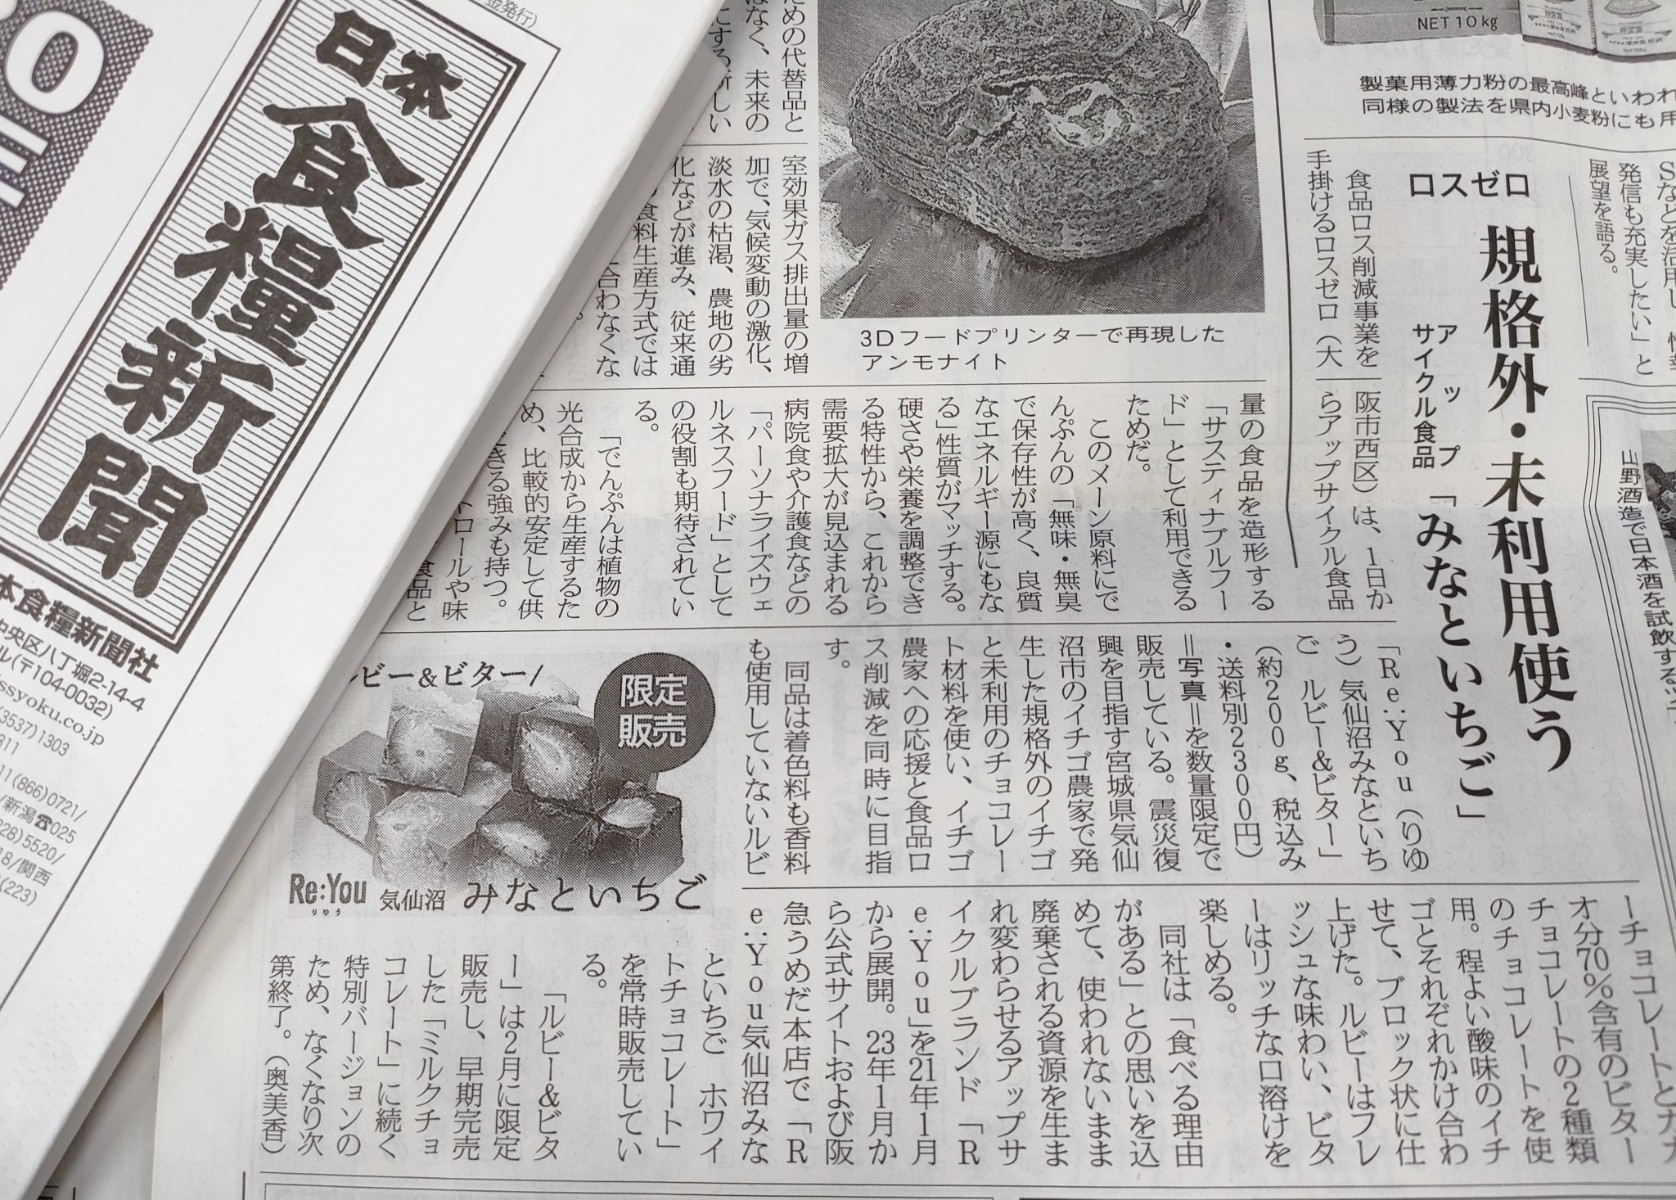 日本食糧新聞